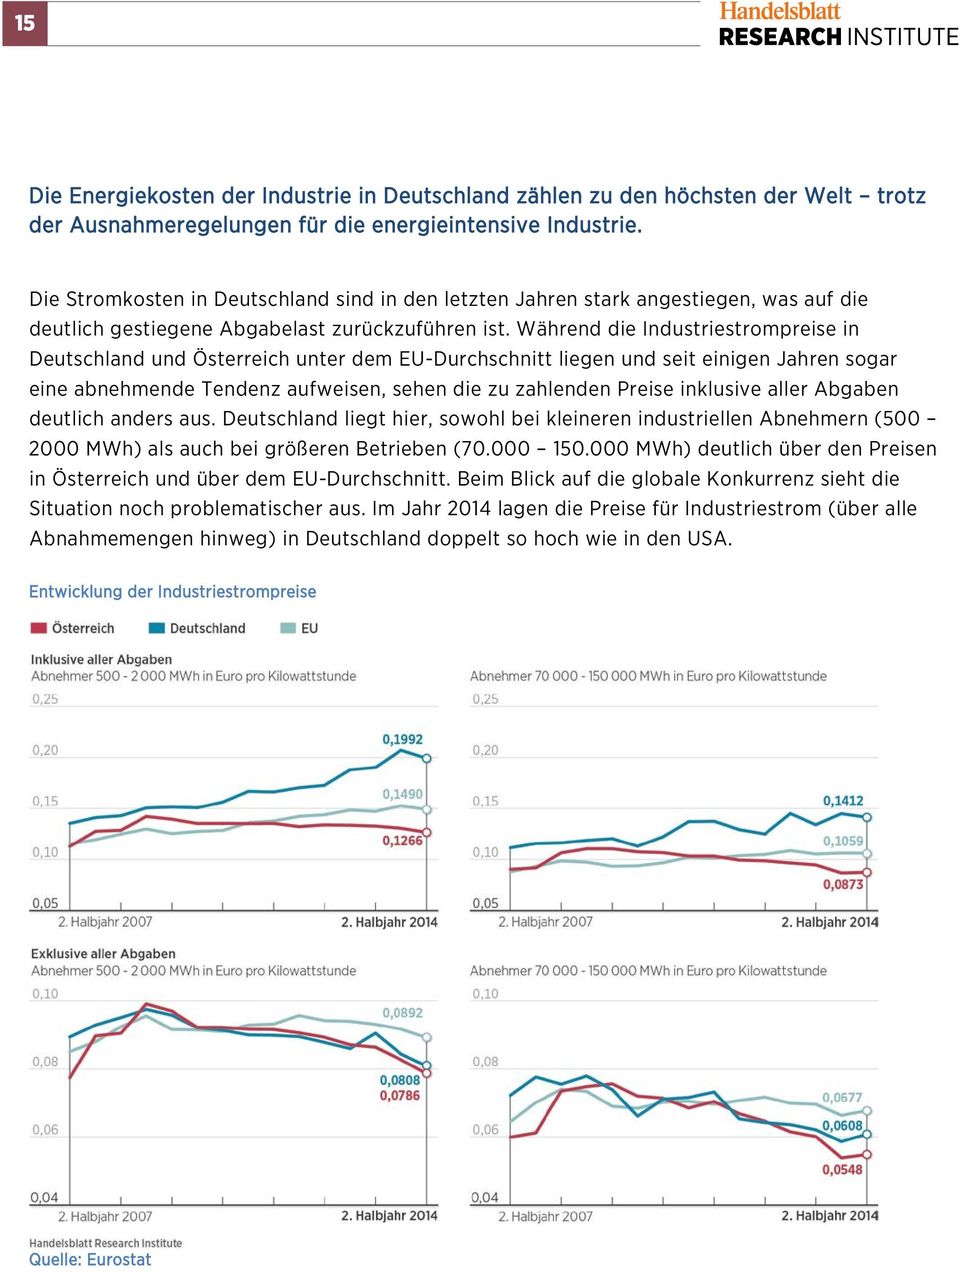 Während die Industriestrompreise in Deutschland und Österreich unter dem EU-Durchschnitt liegen und seit einigen Jahren sogar eine abnehmende Tendenz aufweisen, sehen die zu zahlenden Preise